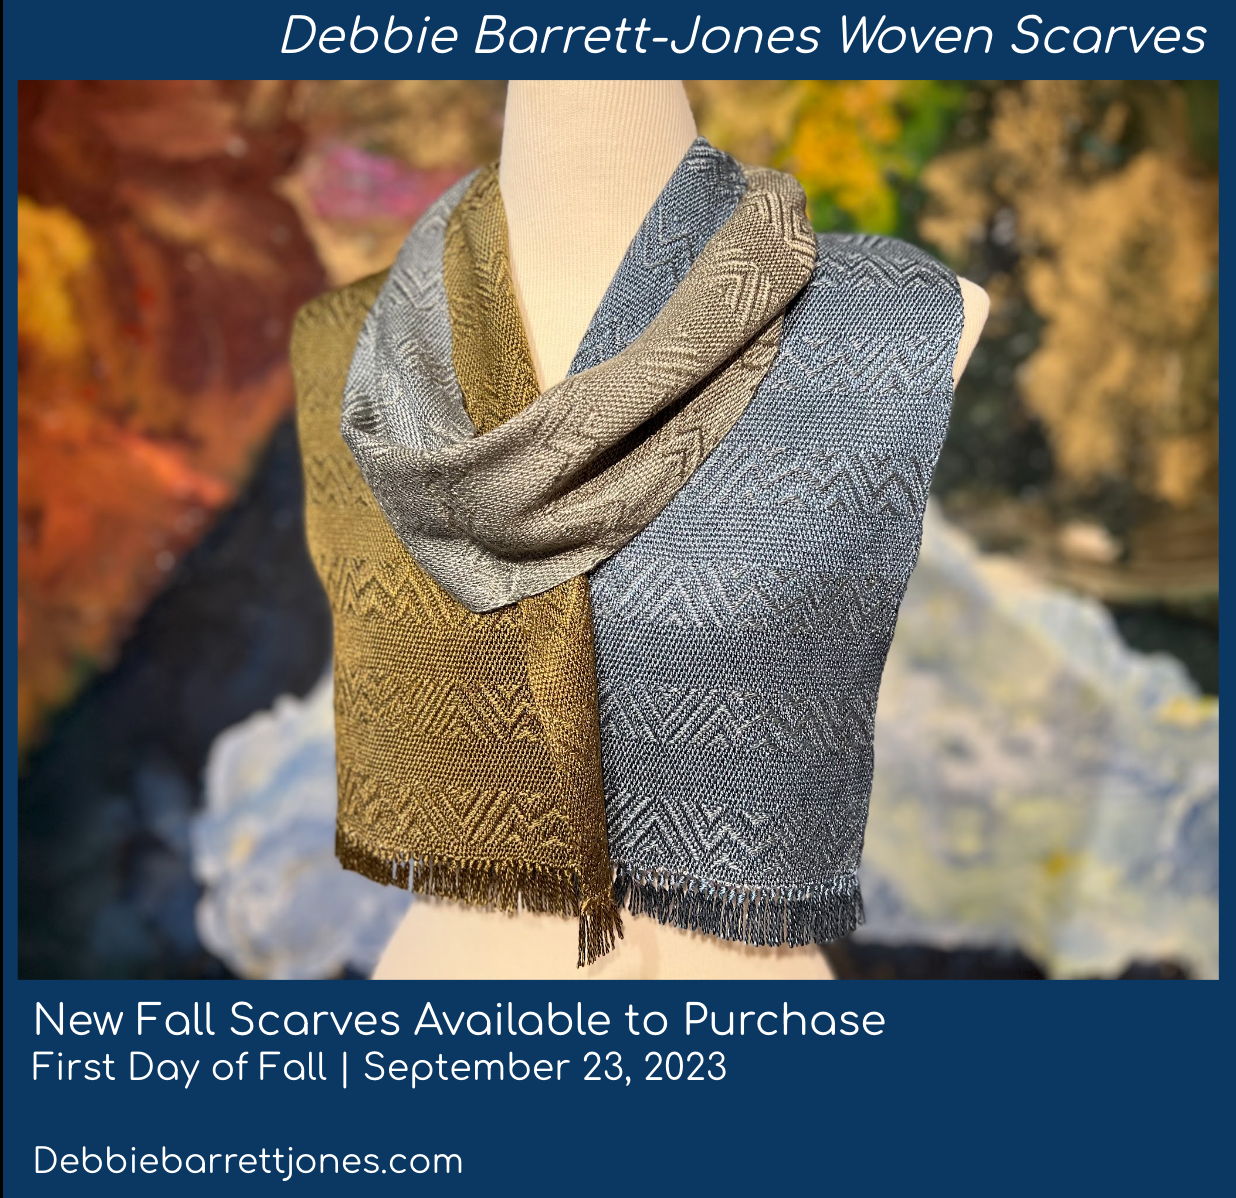 Debbie Barrett-Jones Woven Scarves Fall 2023.png